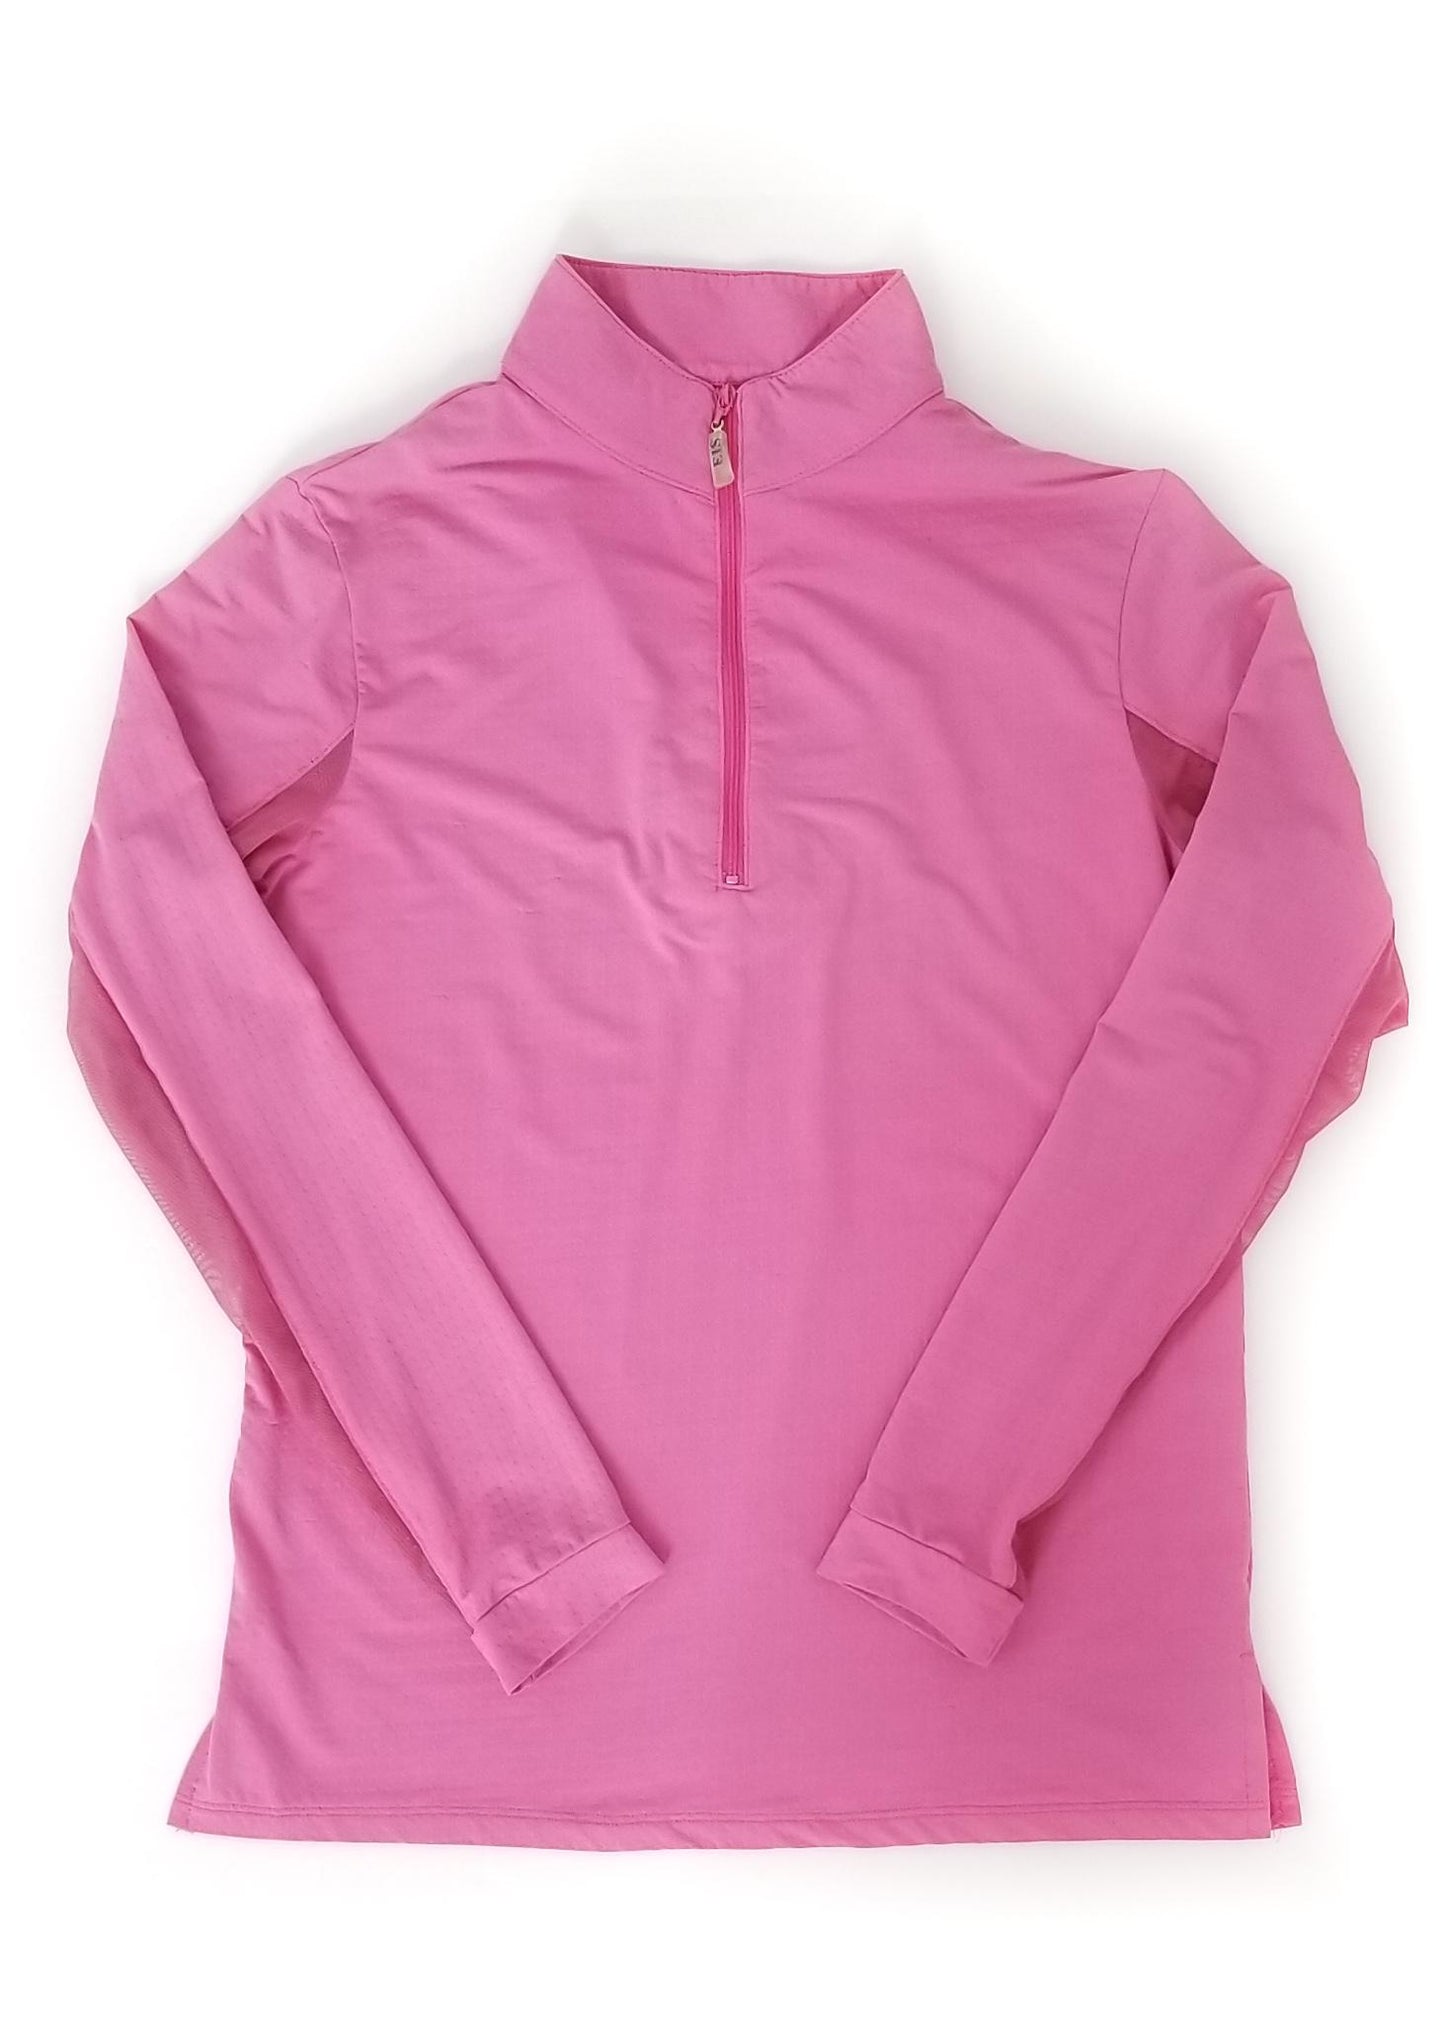 EIS Long Sleeve Sun Shirt - Pink - Women's Small